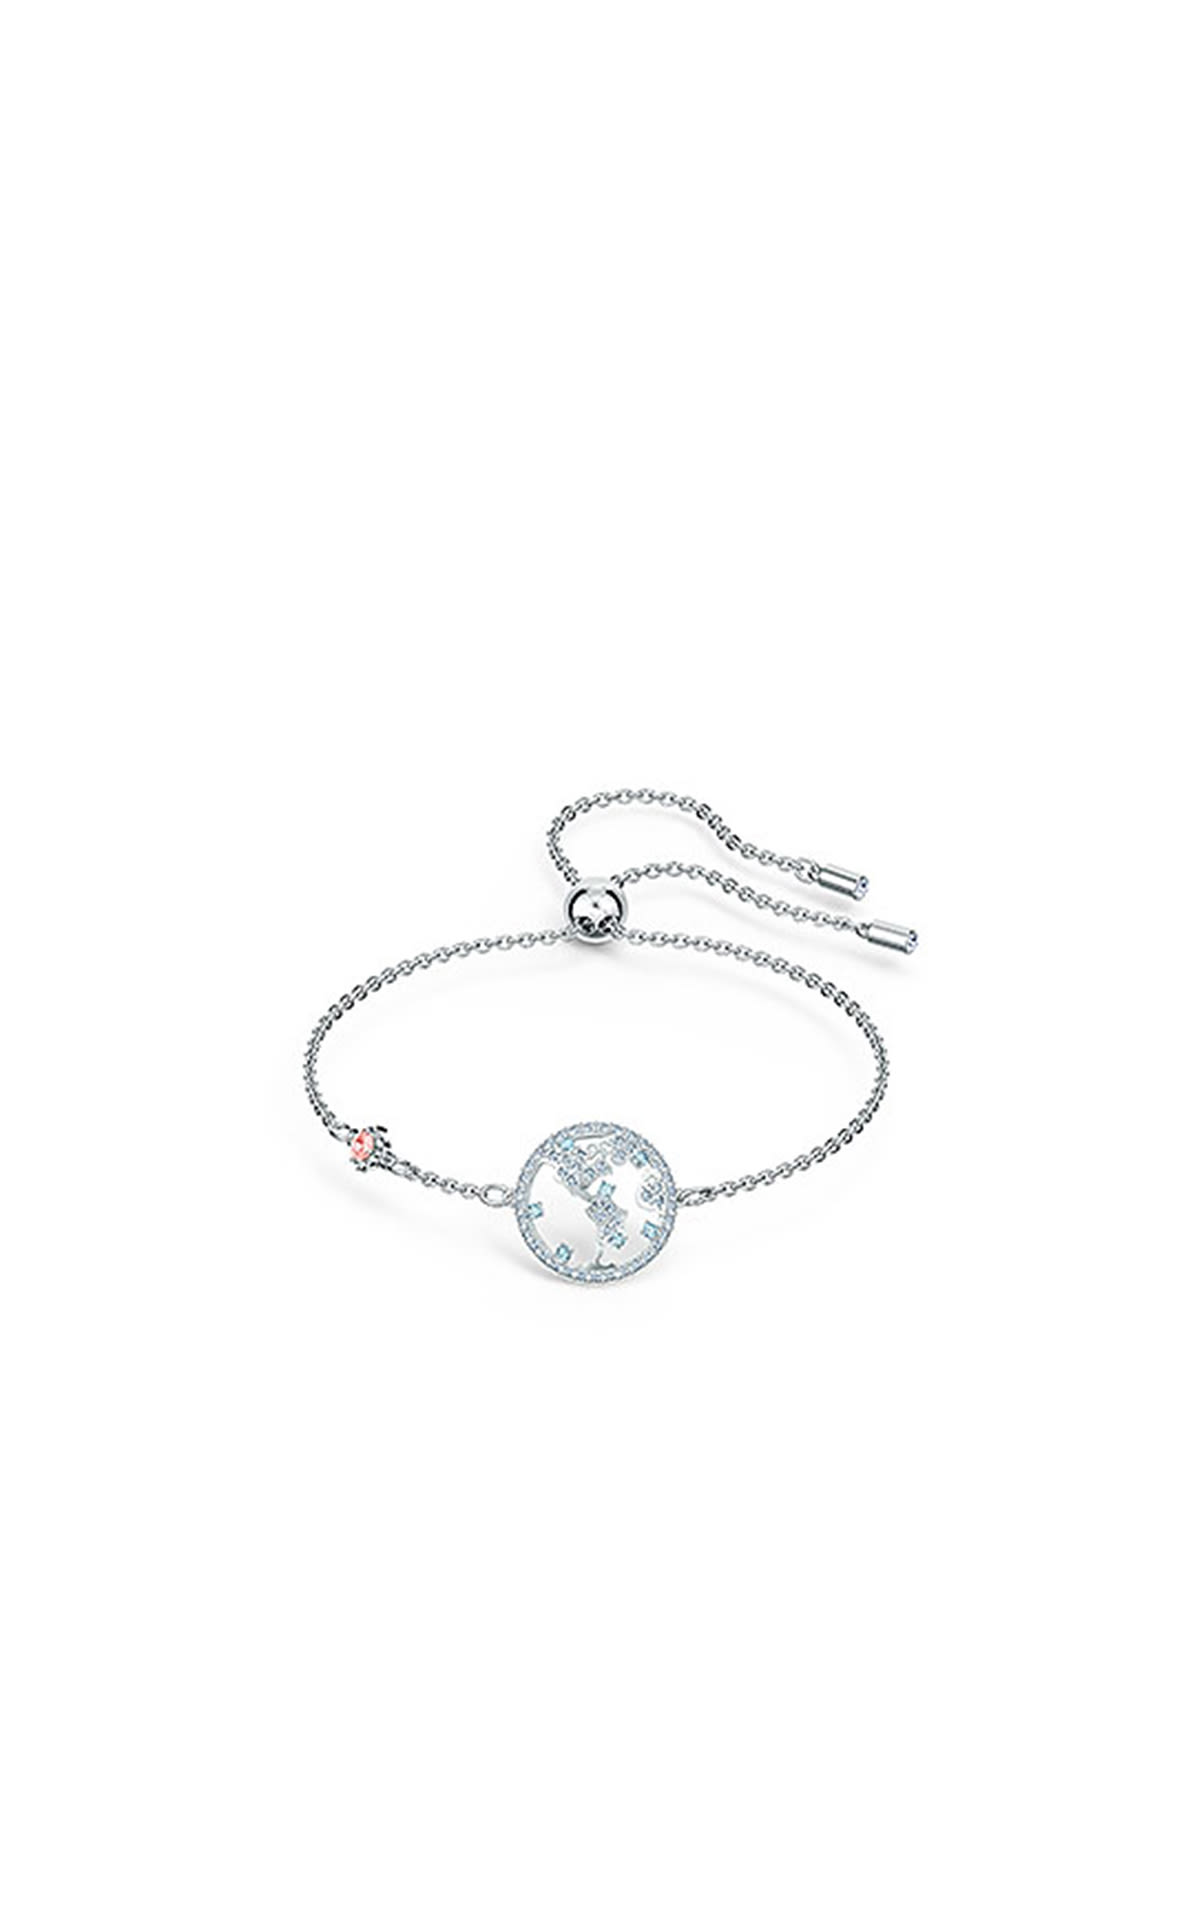 Swarovski Soft Globe bracelet, adjustable, white rhodium plated